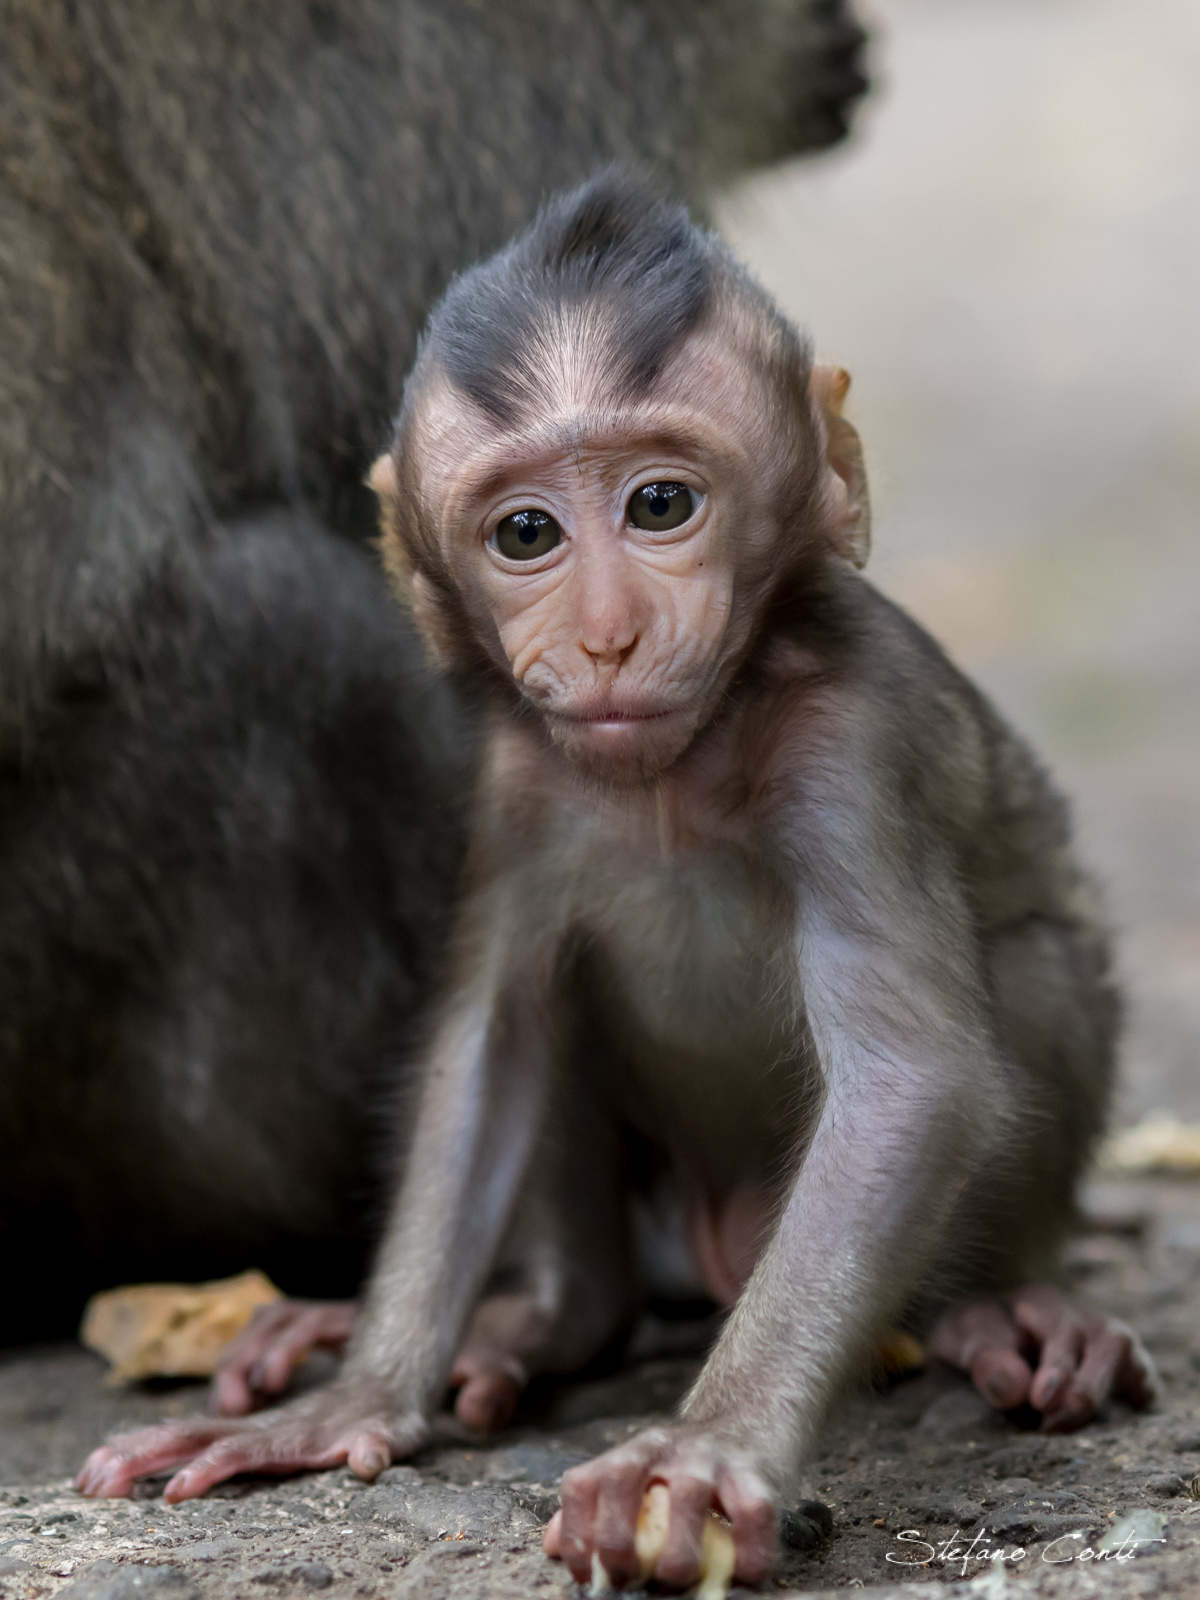 Baby Monkey...